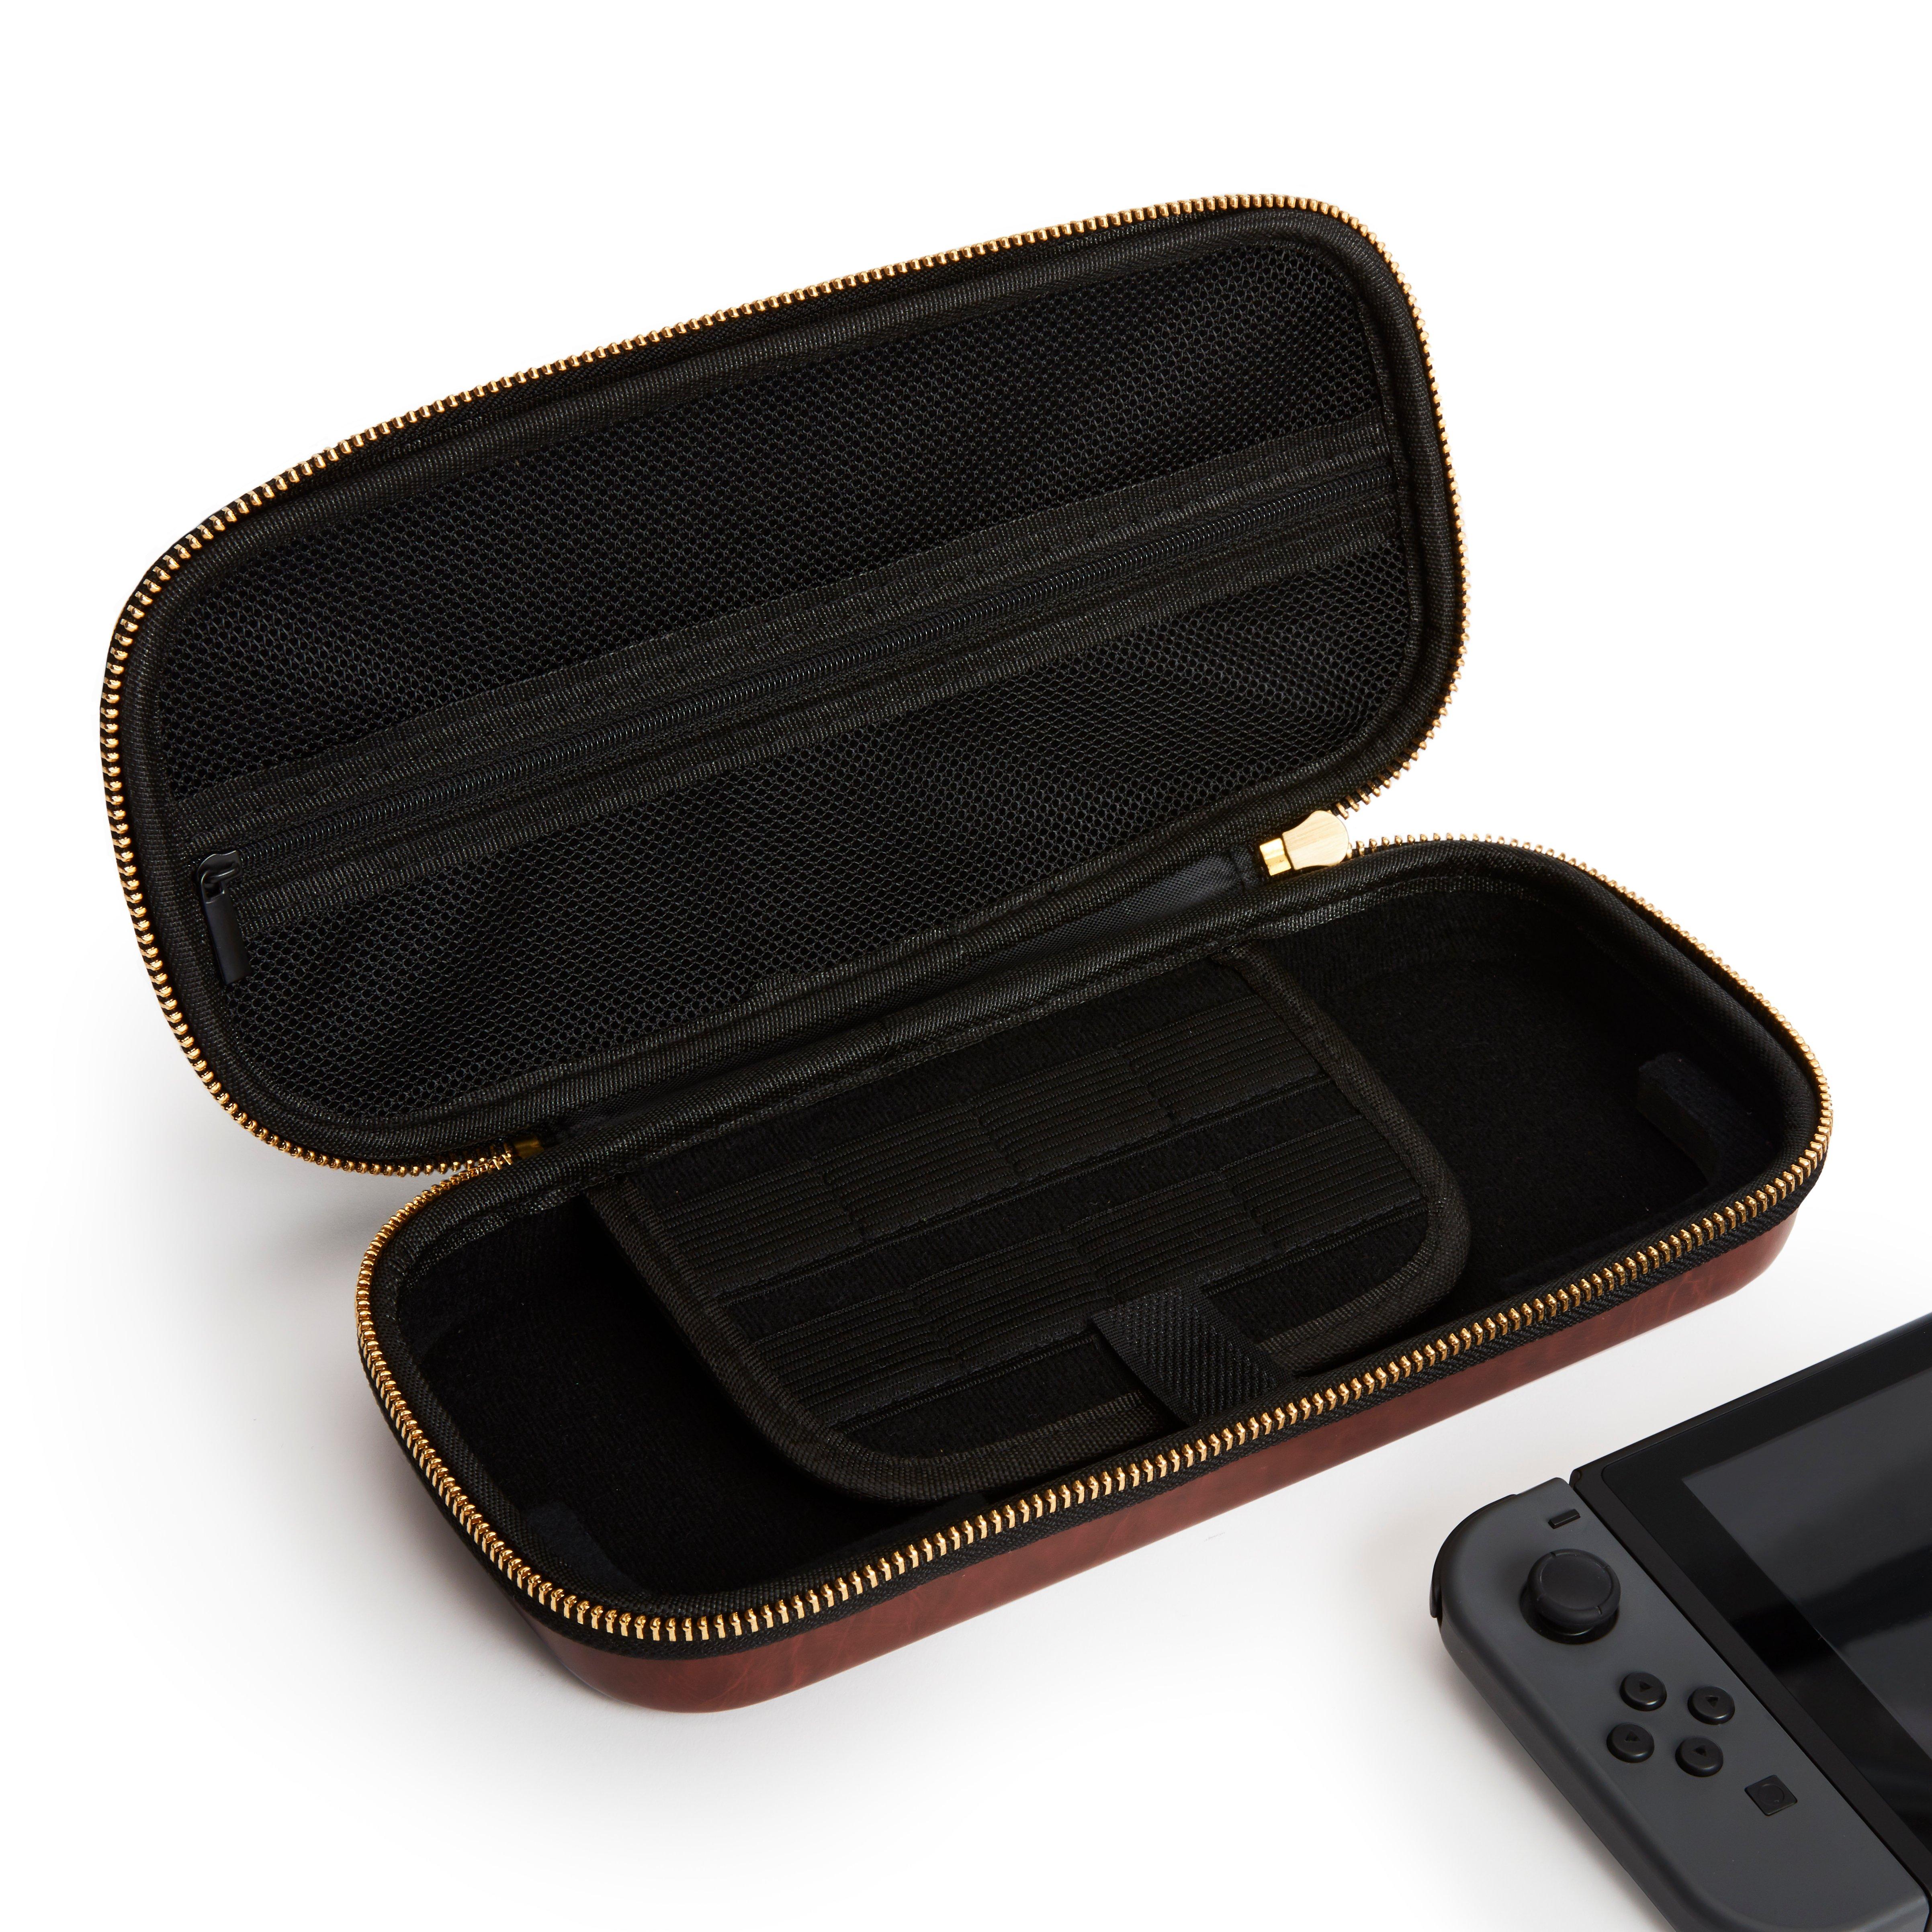 Skur Vejfremstillingsproces heldig Atrix Leather Travel Case for Nintendo Switch GameStop Exclusive | GameStop